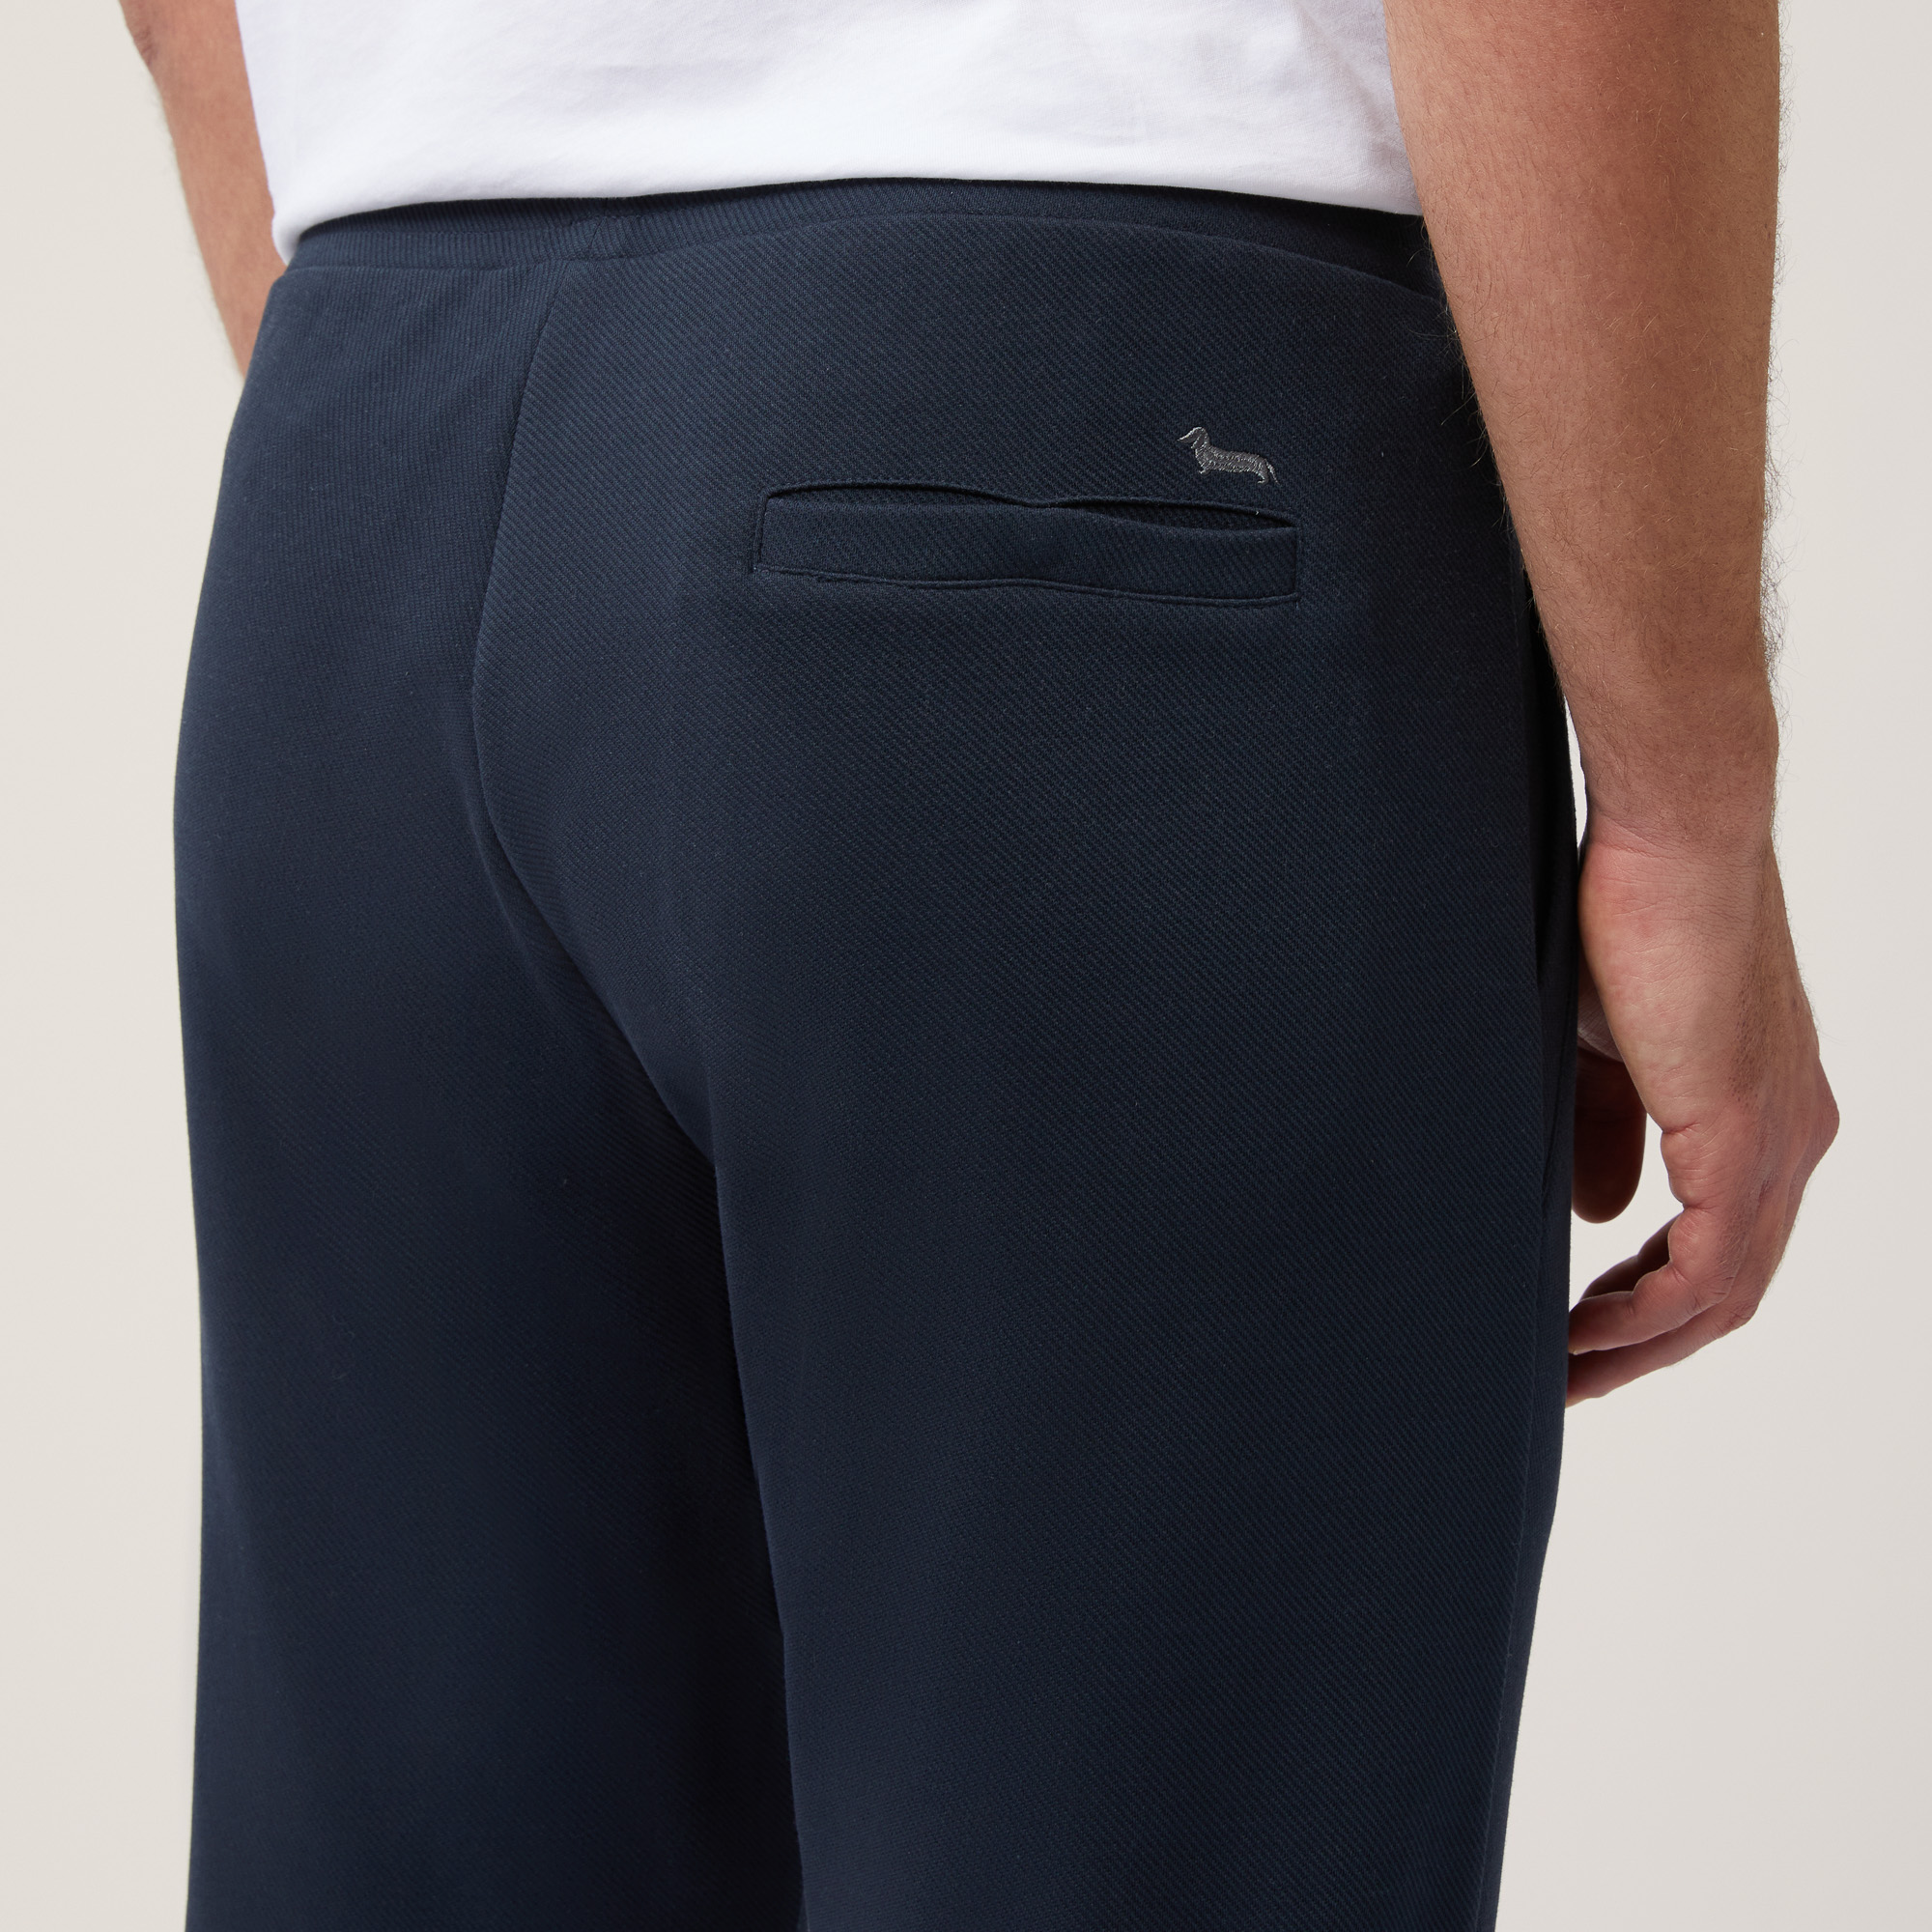 Hose aus Stretch-Baumwolle mit Tasche hinten, Blau, large image number 2